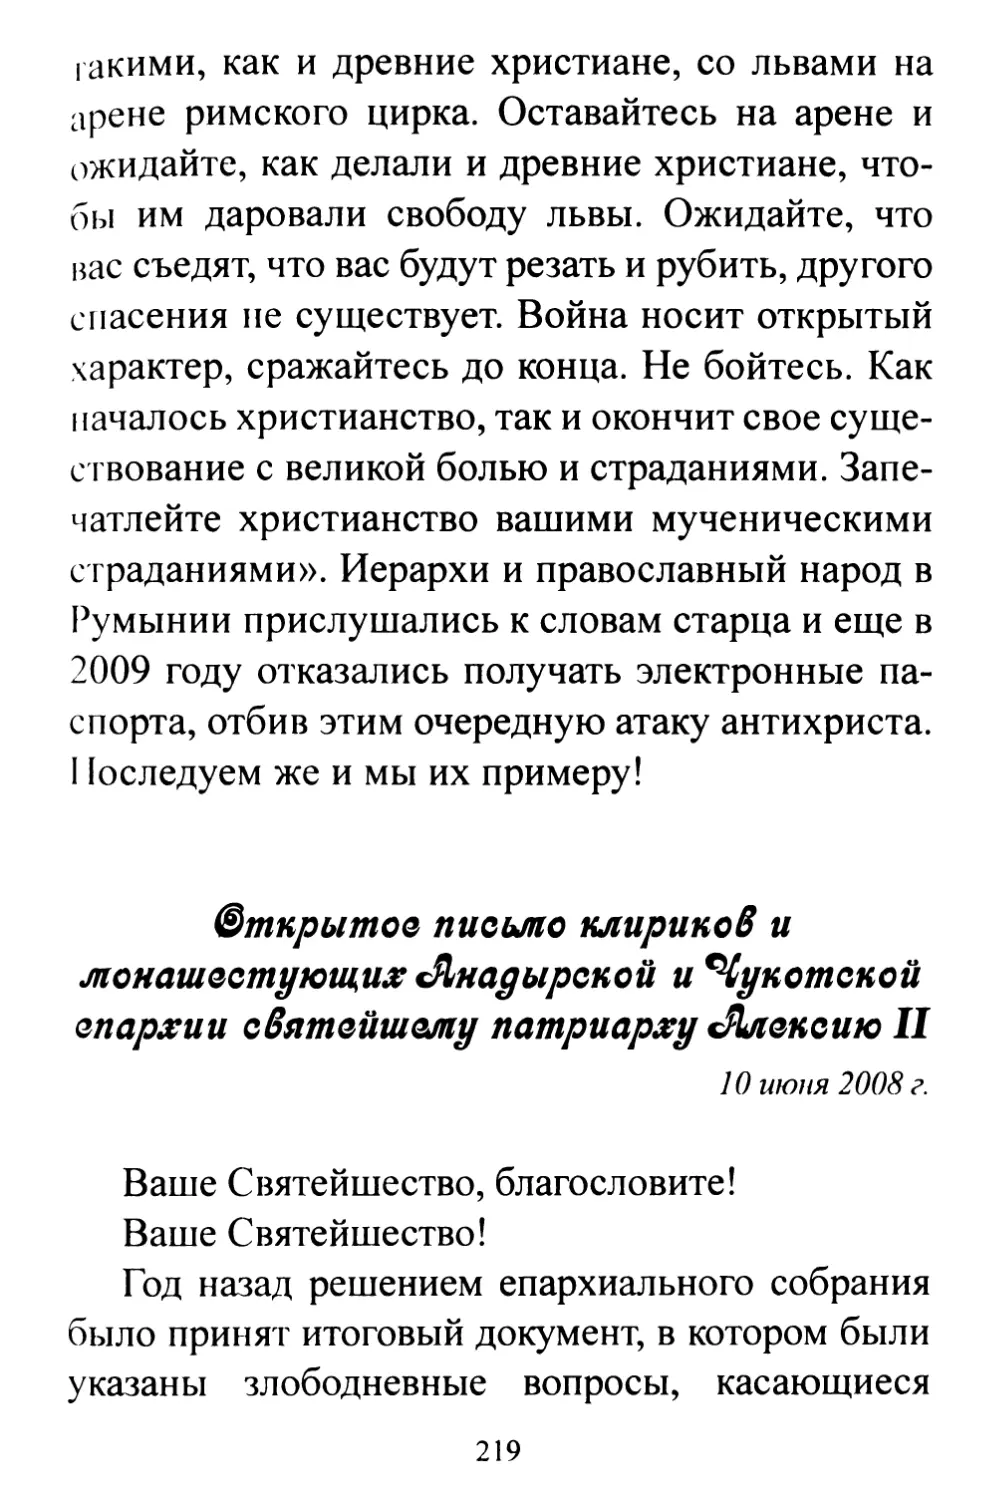 Открытое письмо клириков и монашествующих Анадырской и Чукотской епархии святейшему патриарху Алексию II